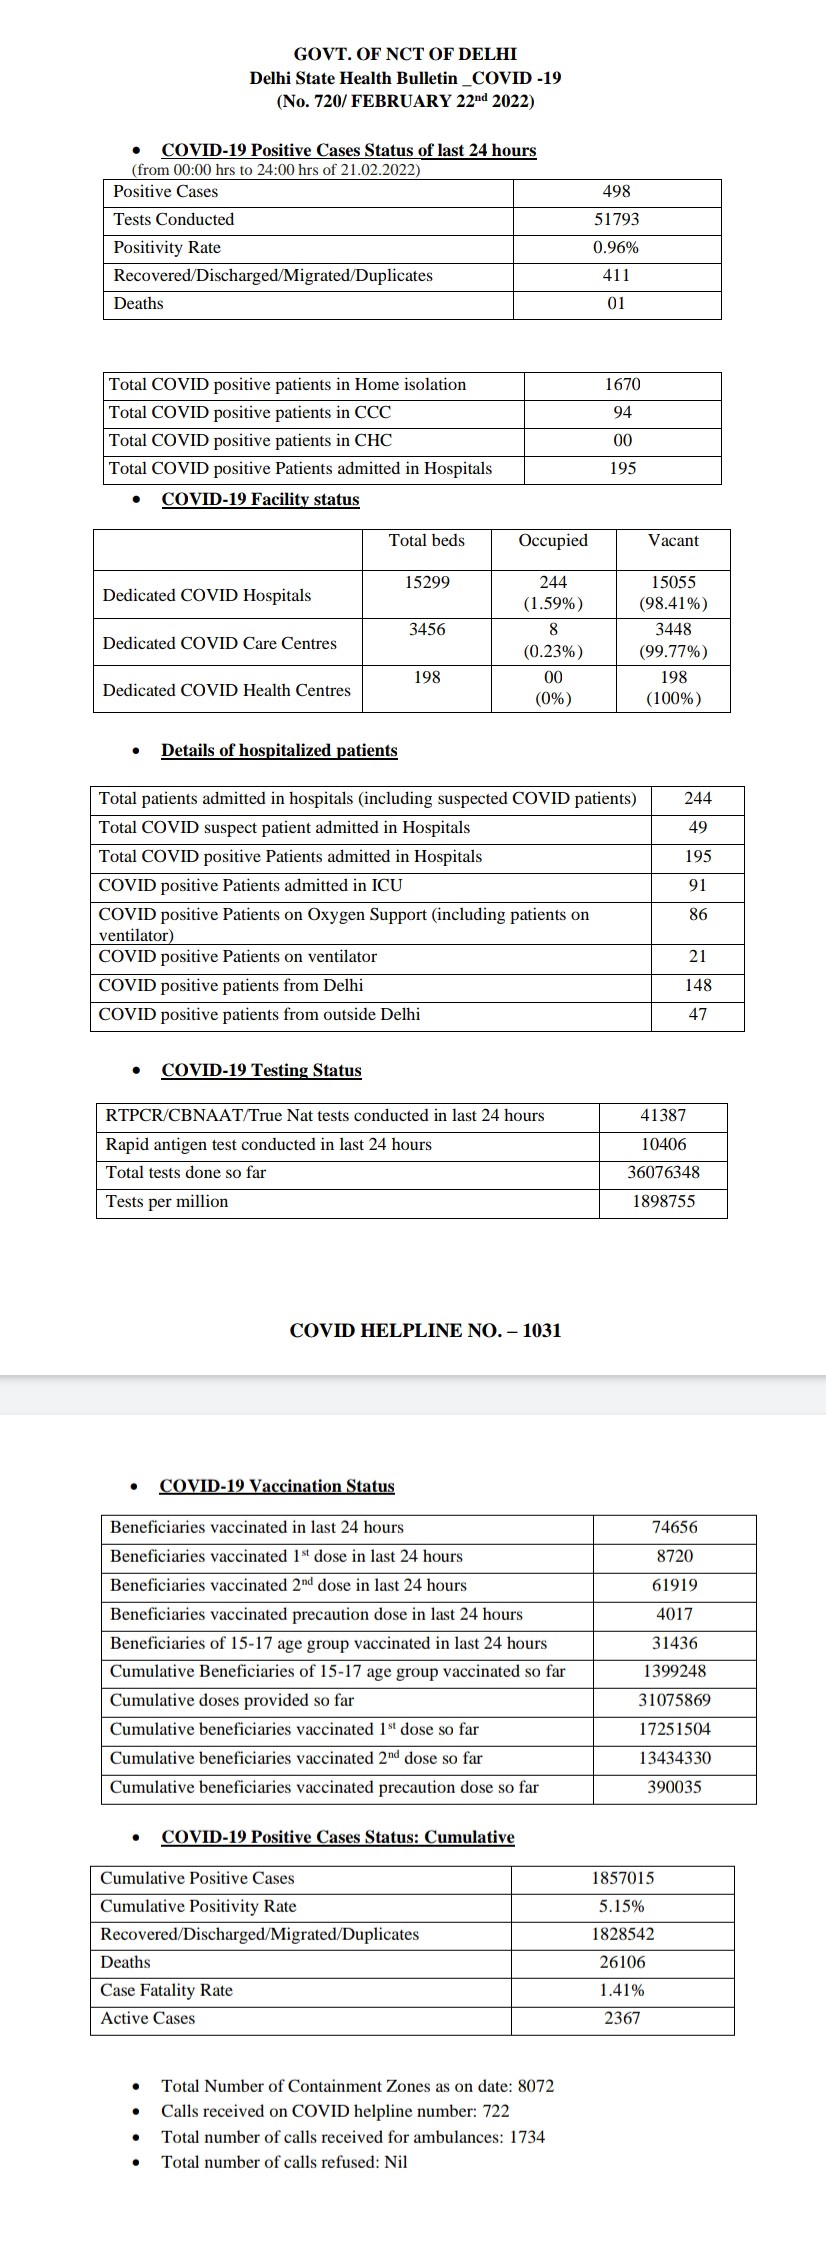 DELHI CORONA UPDATE 498 NEW CORONA CASES FOUND IN DELHI